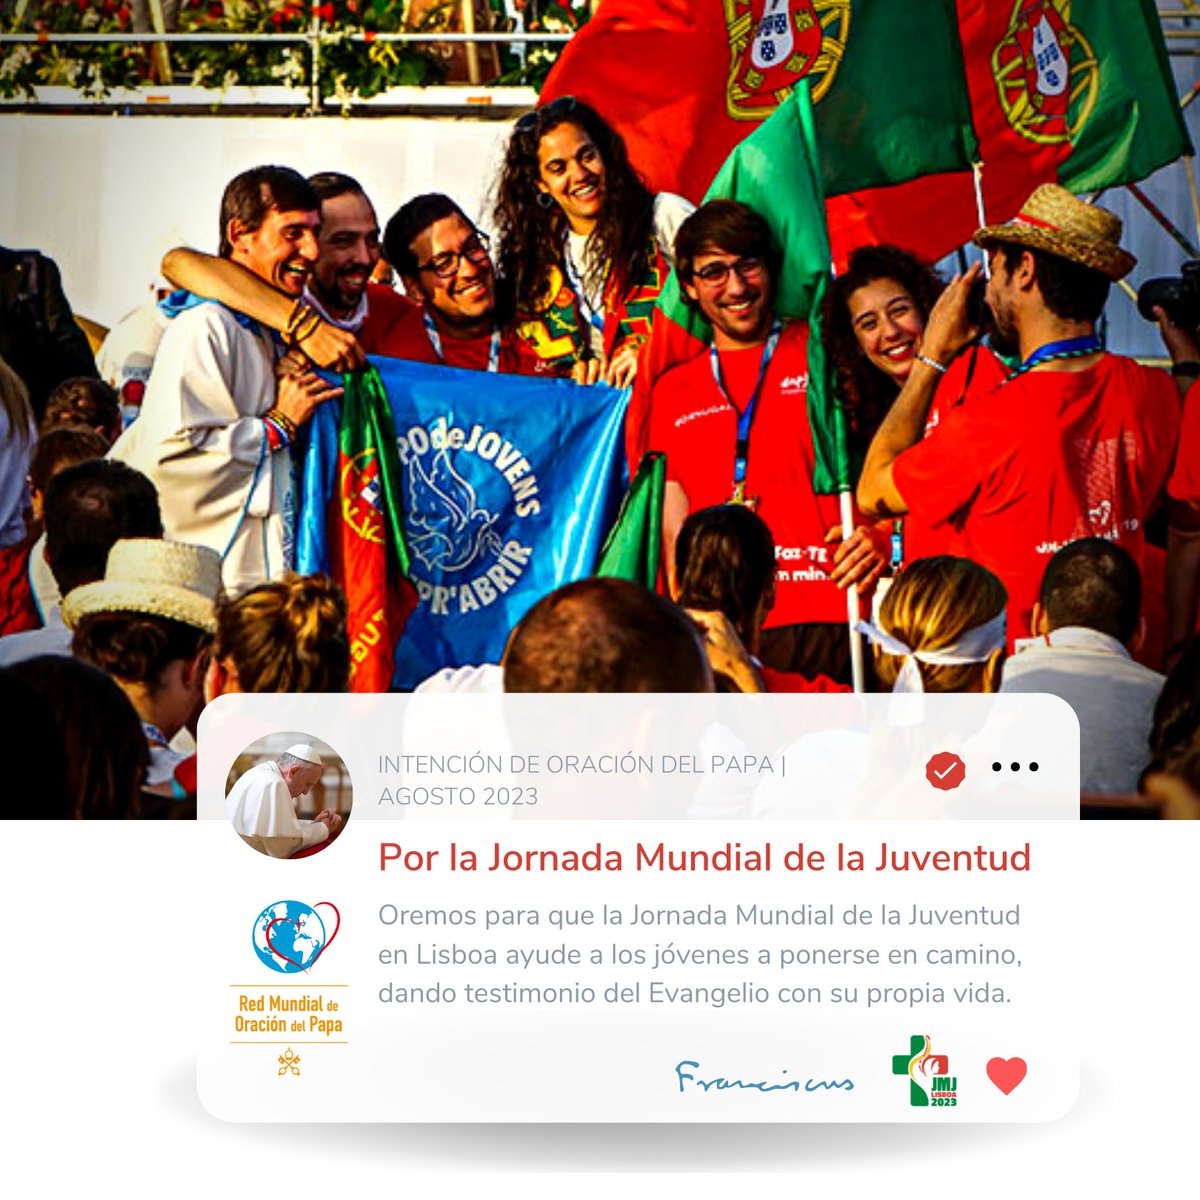 En agosto recemos con Papa Francisco “Por la Jornada Mundial de la Juventud” 🙏📷#IntencióndeOracióndelPapa #Lisboa2023 #Jóvenes #EnCamino #OremosJuntos oraciondelpapa.va
mej.va
@elvideodelpapa
@clicktoprayapp
@lisboa2023_es
@LaityFamilyLife